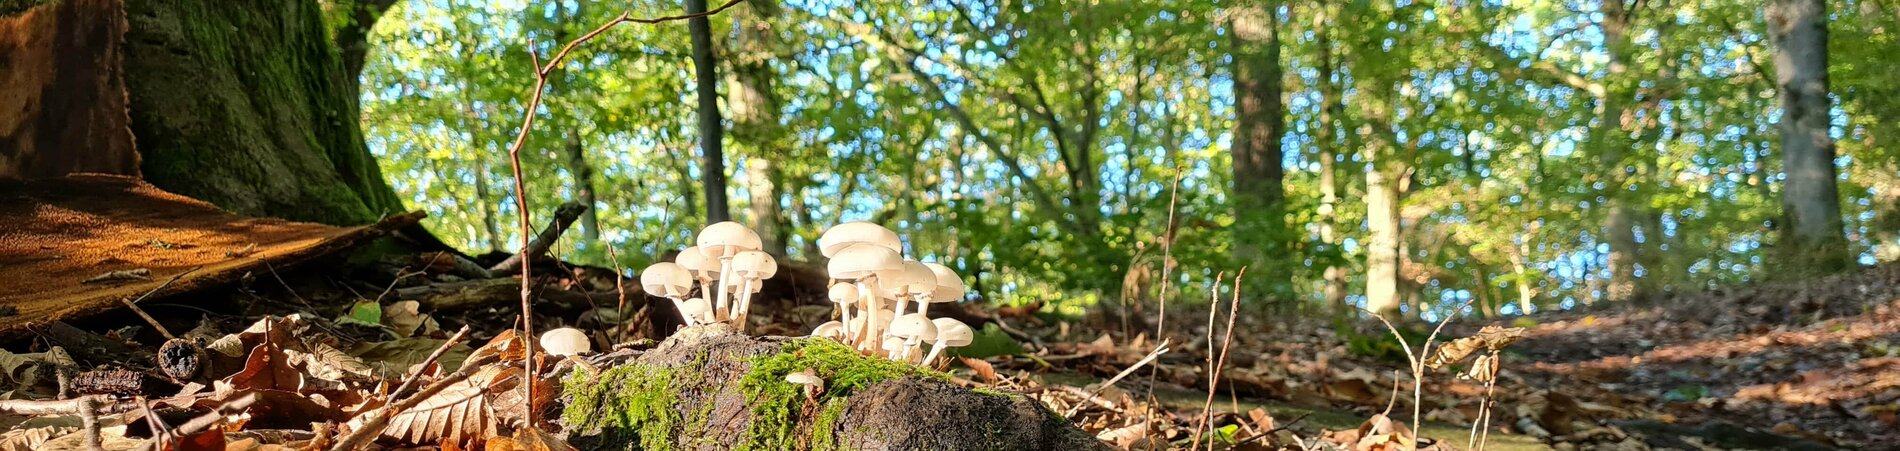 Laub und Pilze auf dem Waldboden